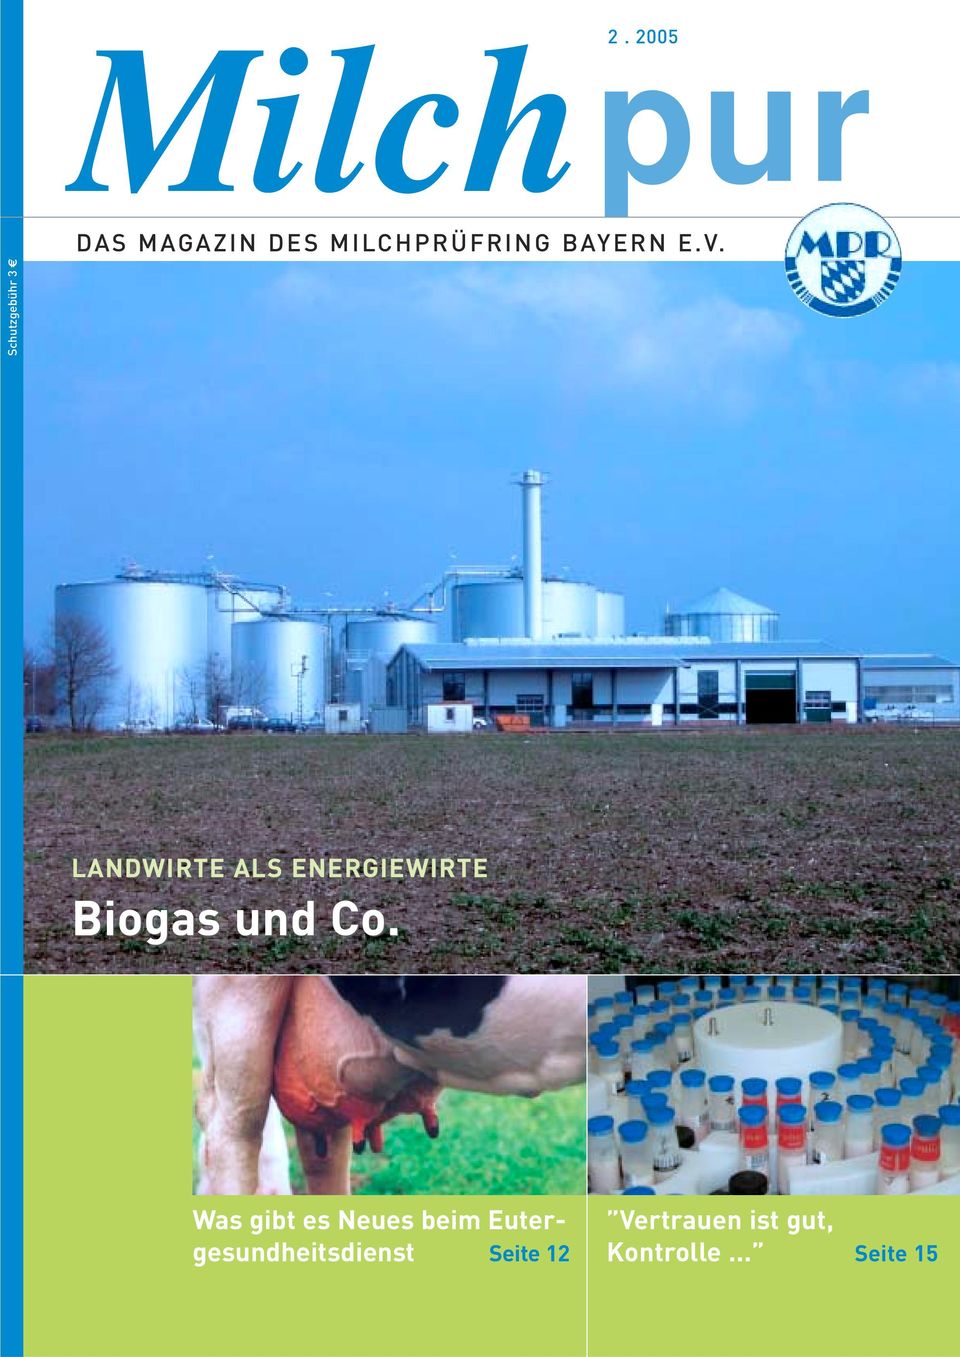 LANDWIRTE ALS ENERGIEWIRTE Biogas und Co.